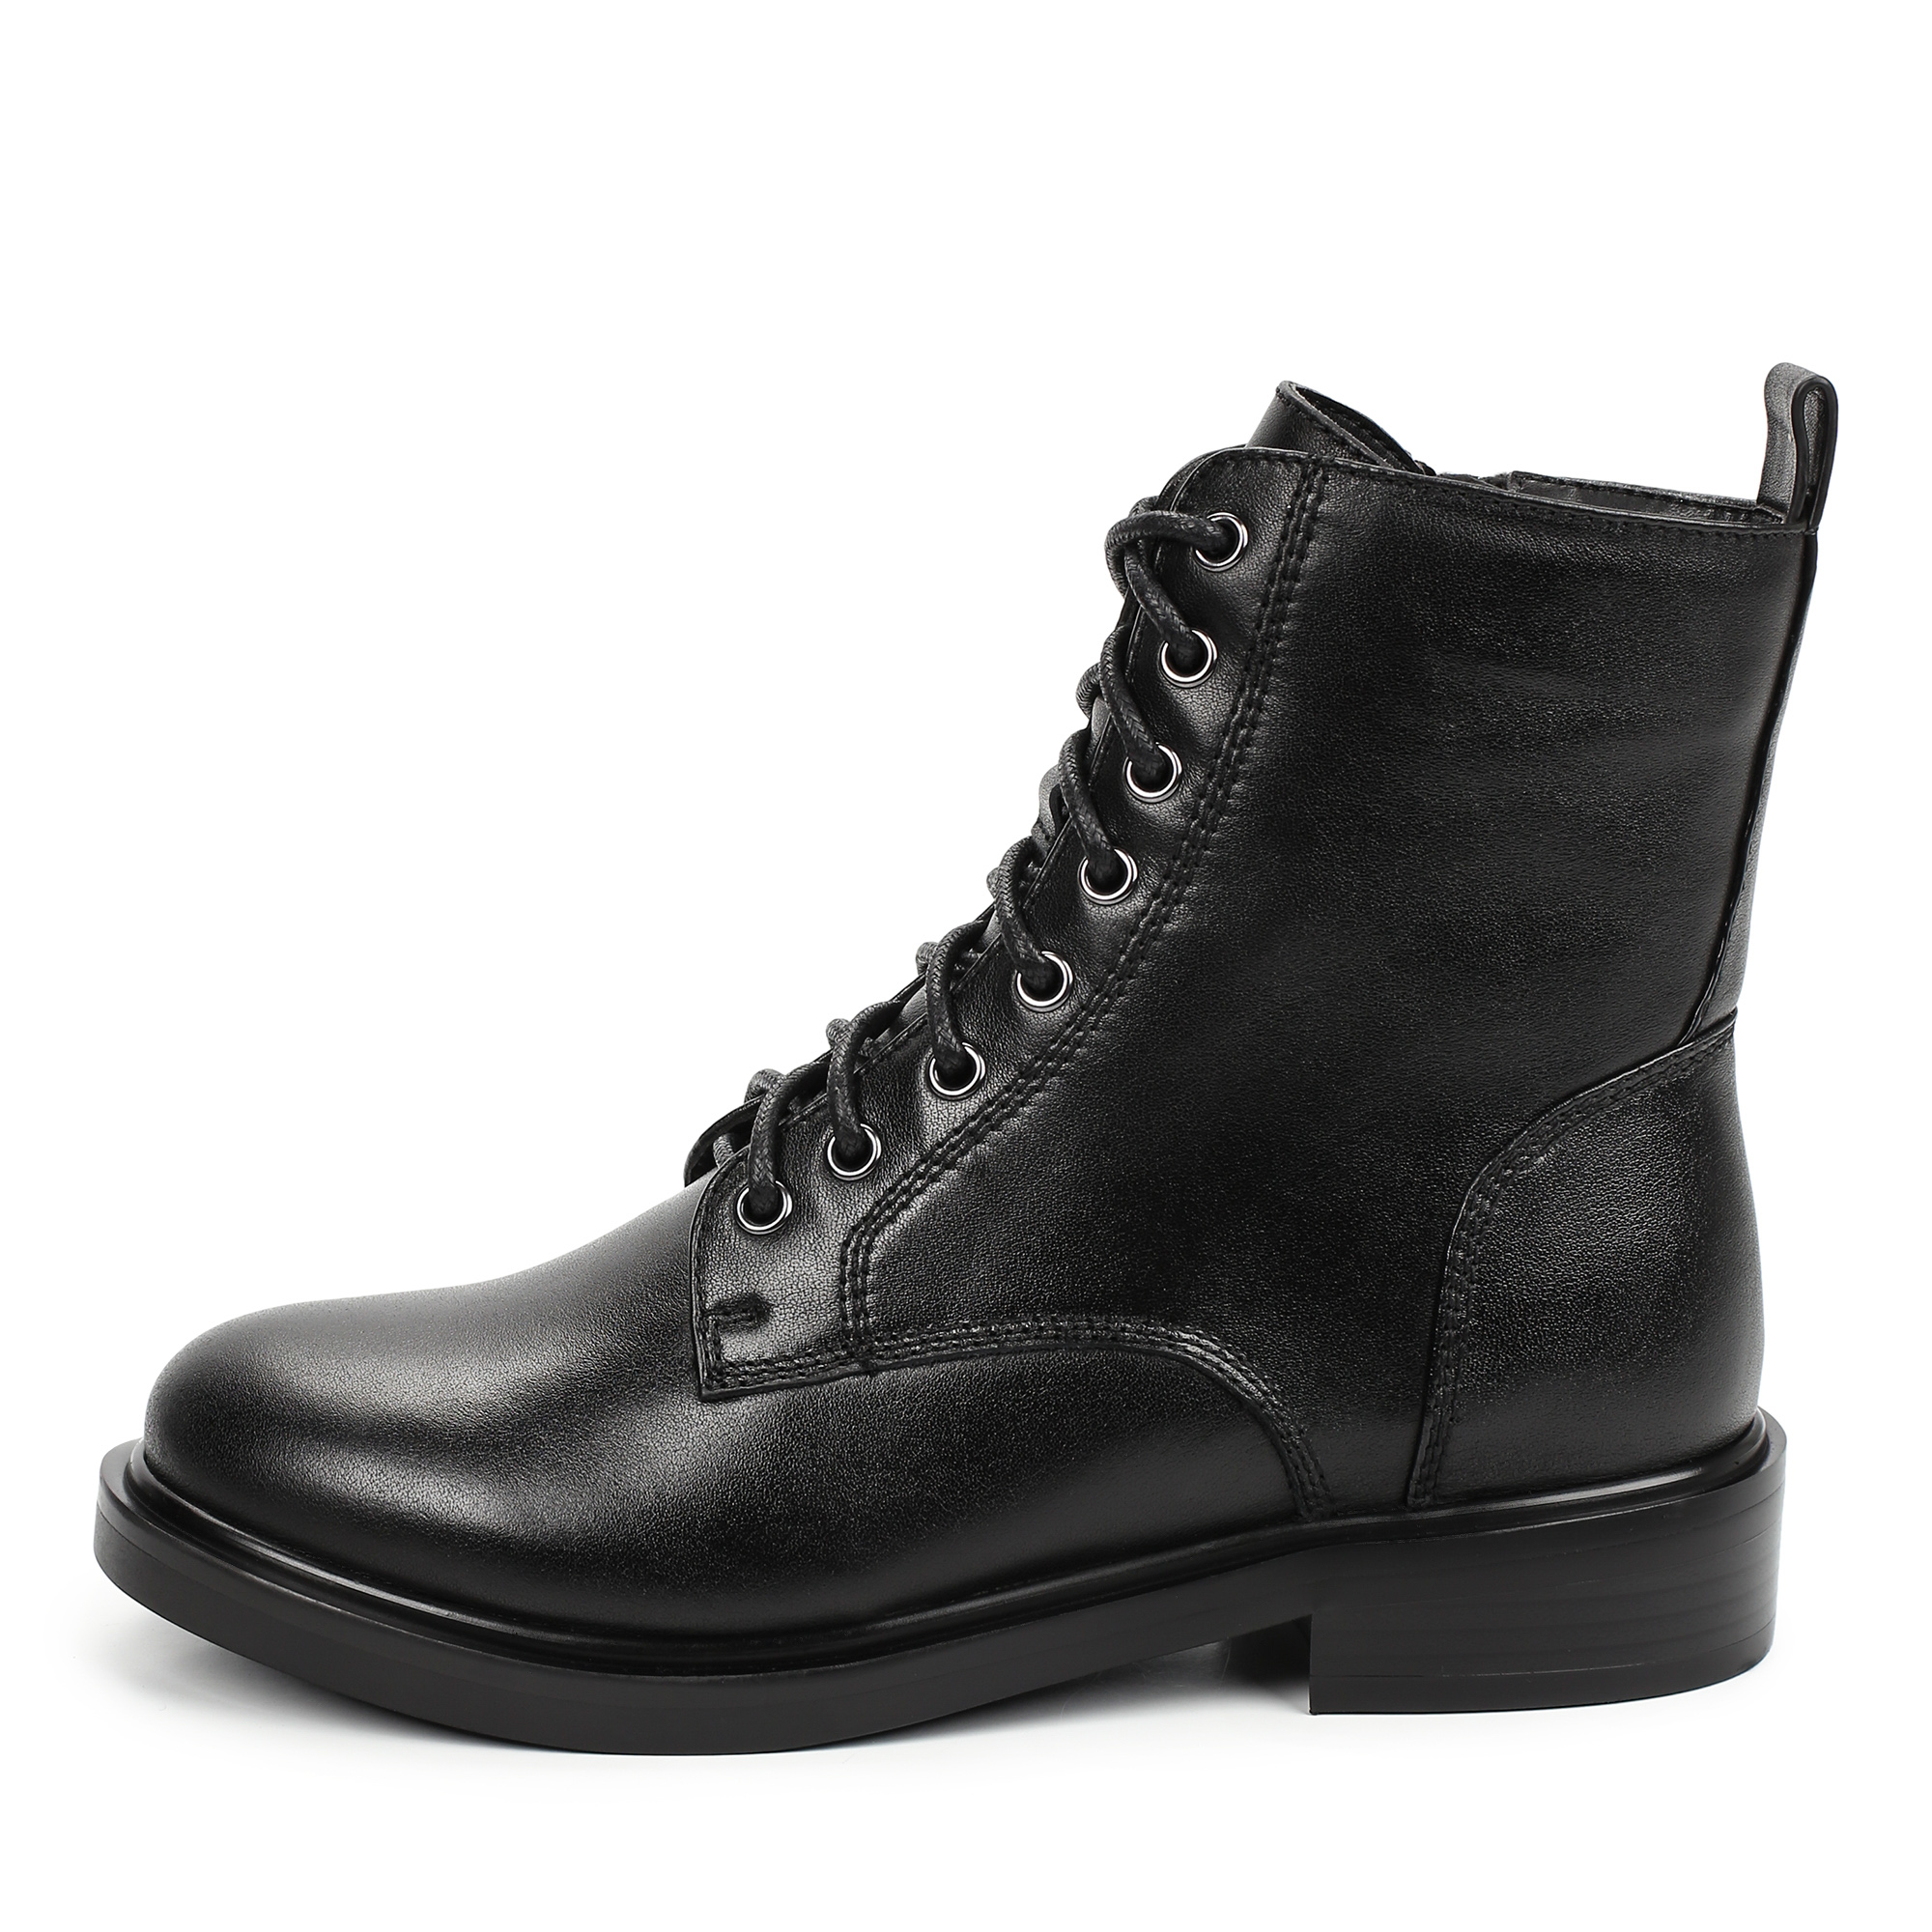 Ботинки Thomas Munz 233-707B-2102, цвет черный, размер 36 - фото 1